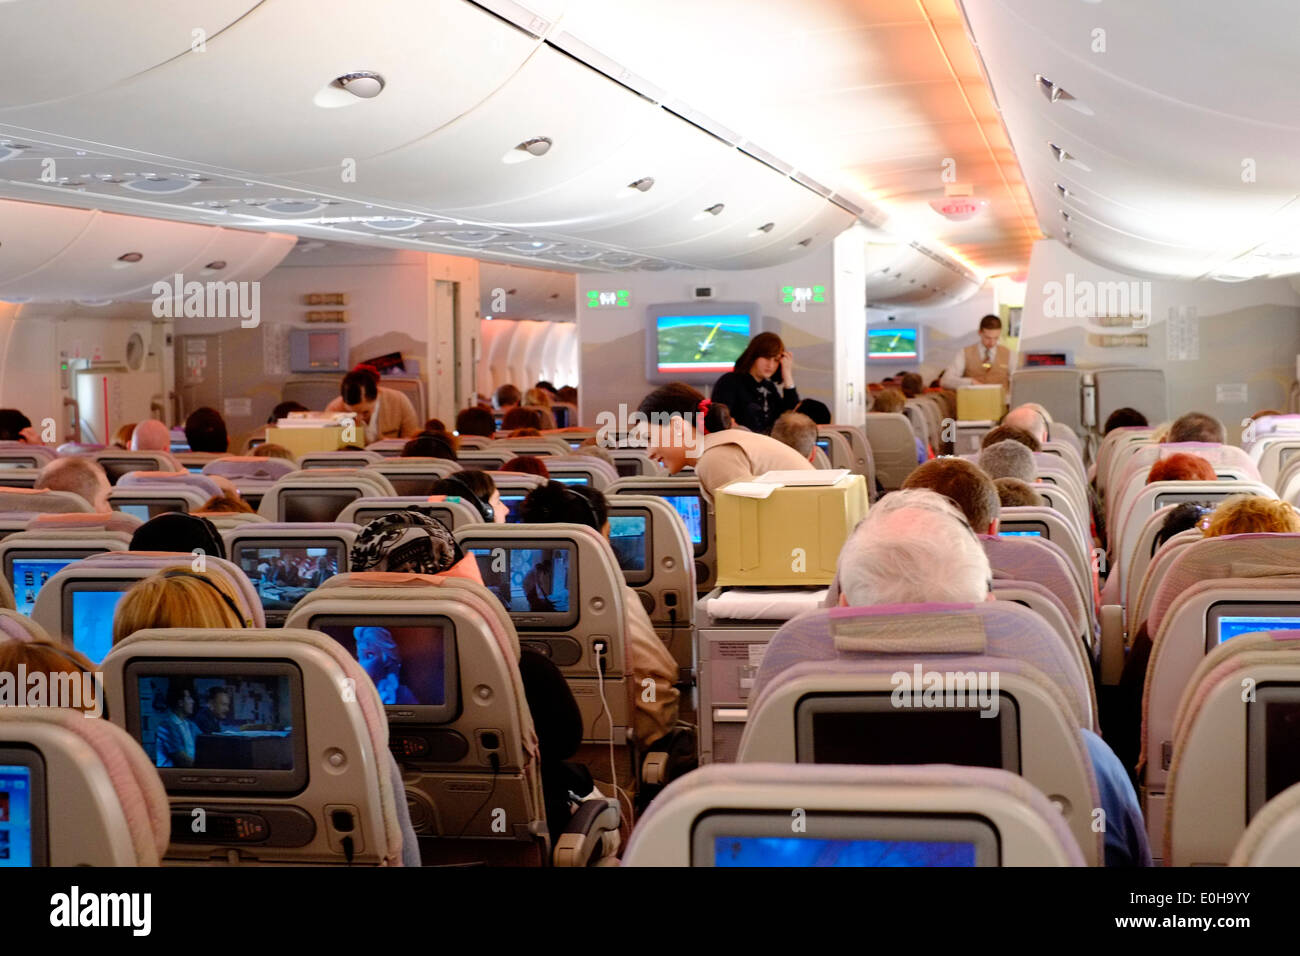 Hostess che serve rinfreschi da un carrello nell'economia cabina di un A380 Emirates airbus Foto Stock